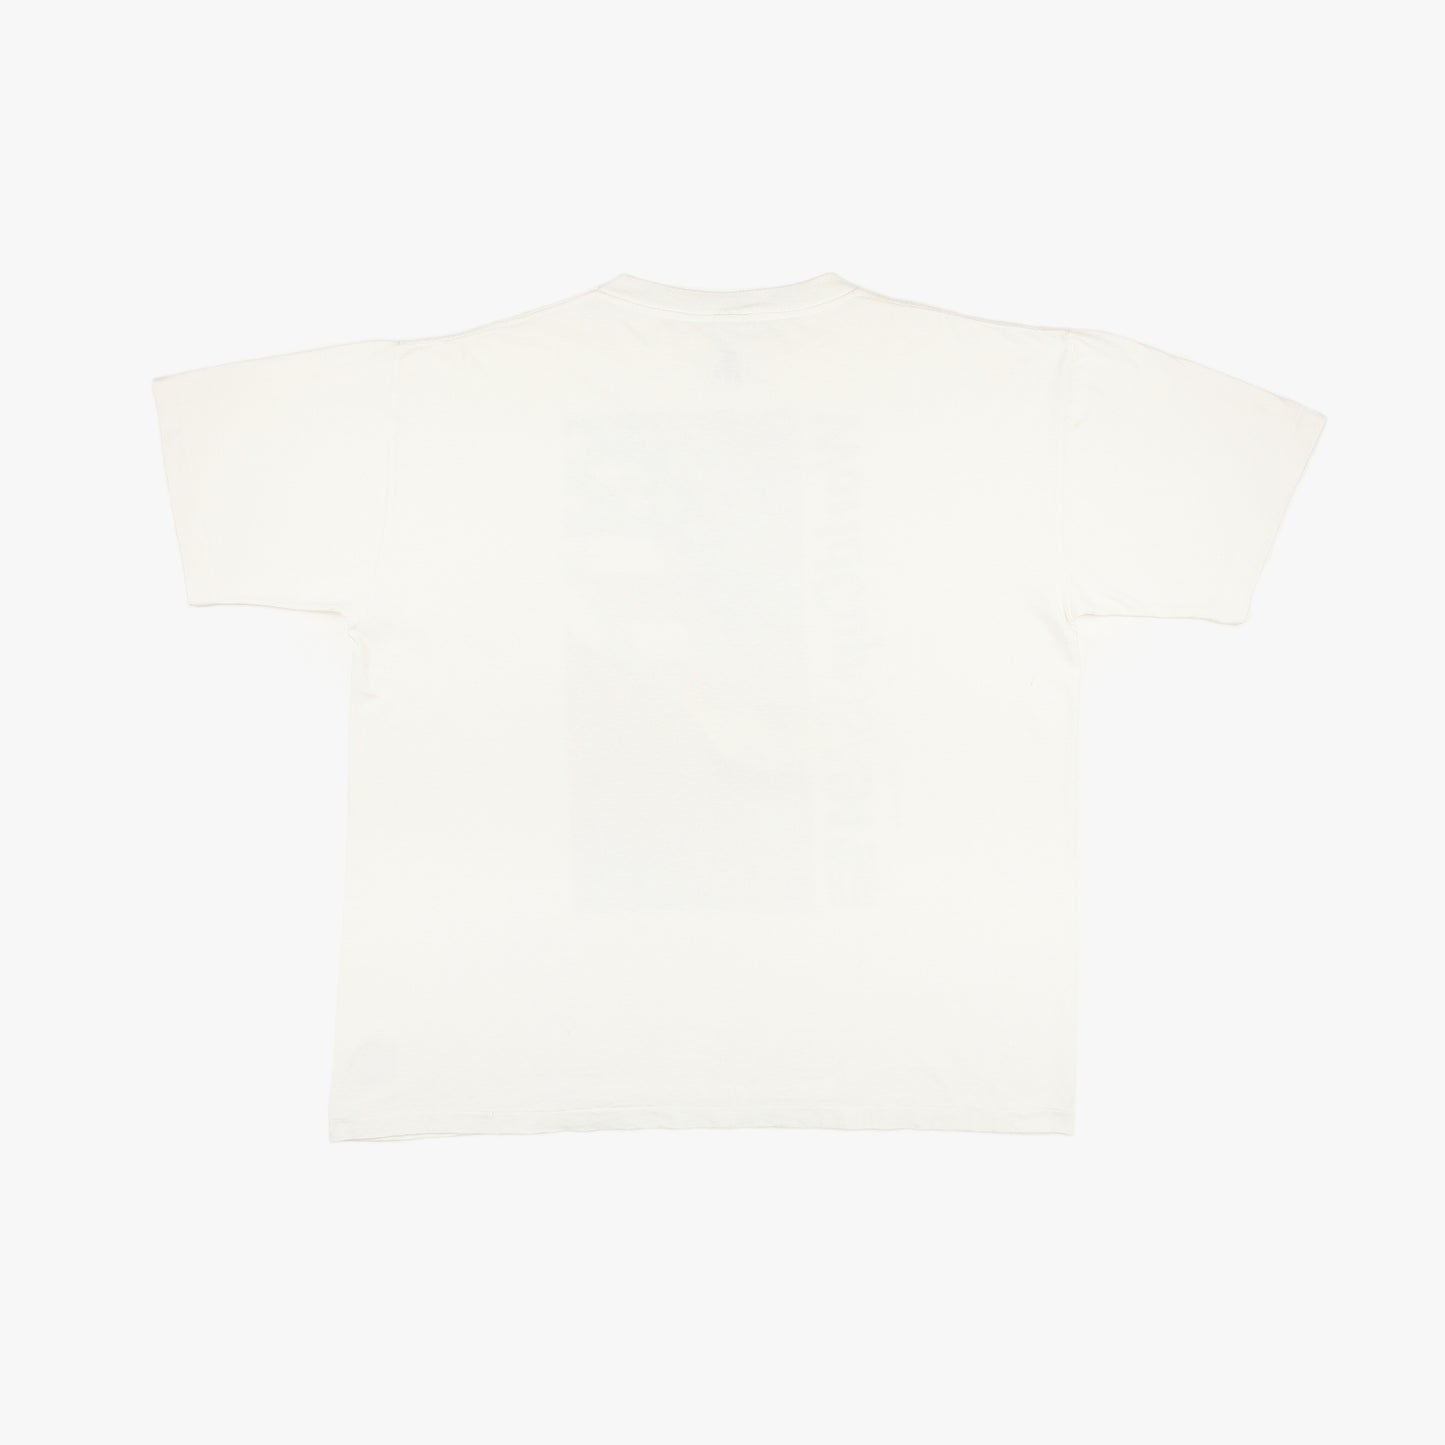 USA 94 • Official Merchandise T-Shirt • XL